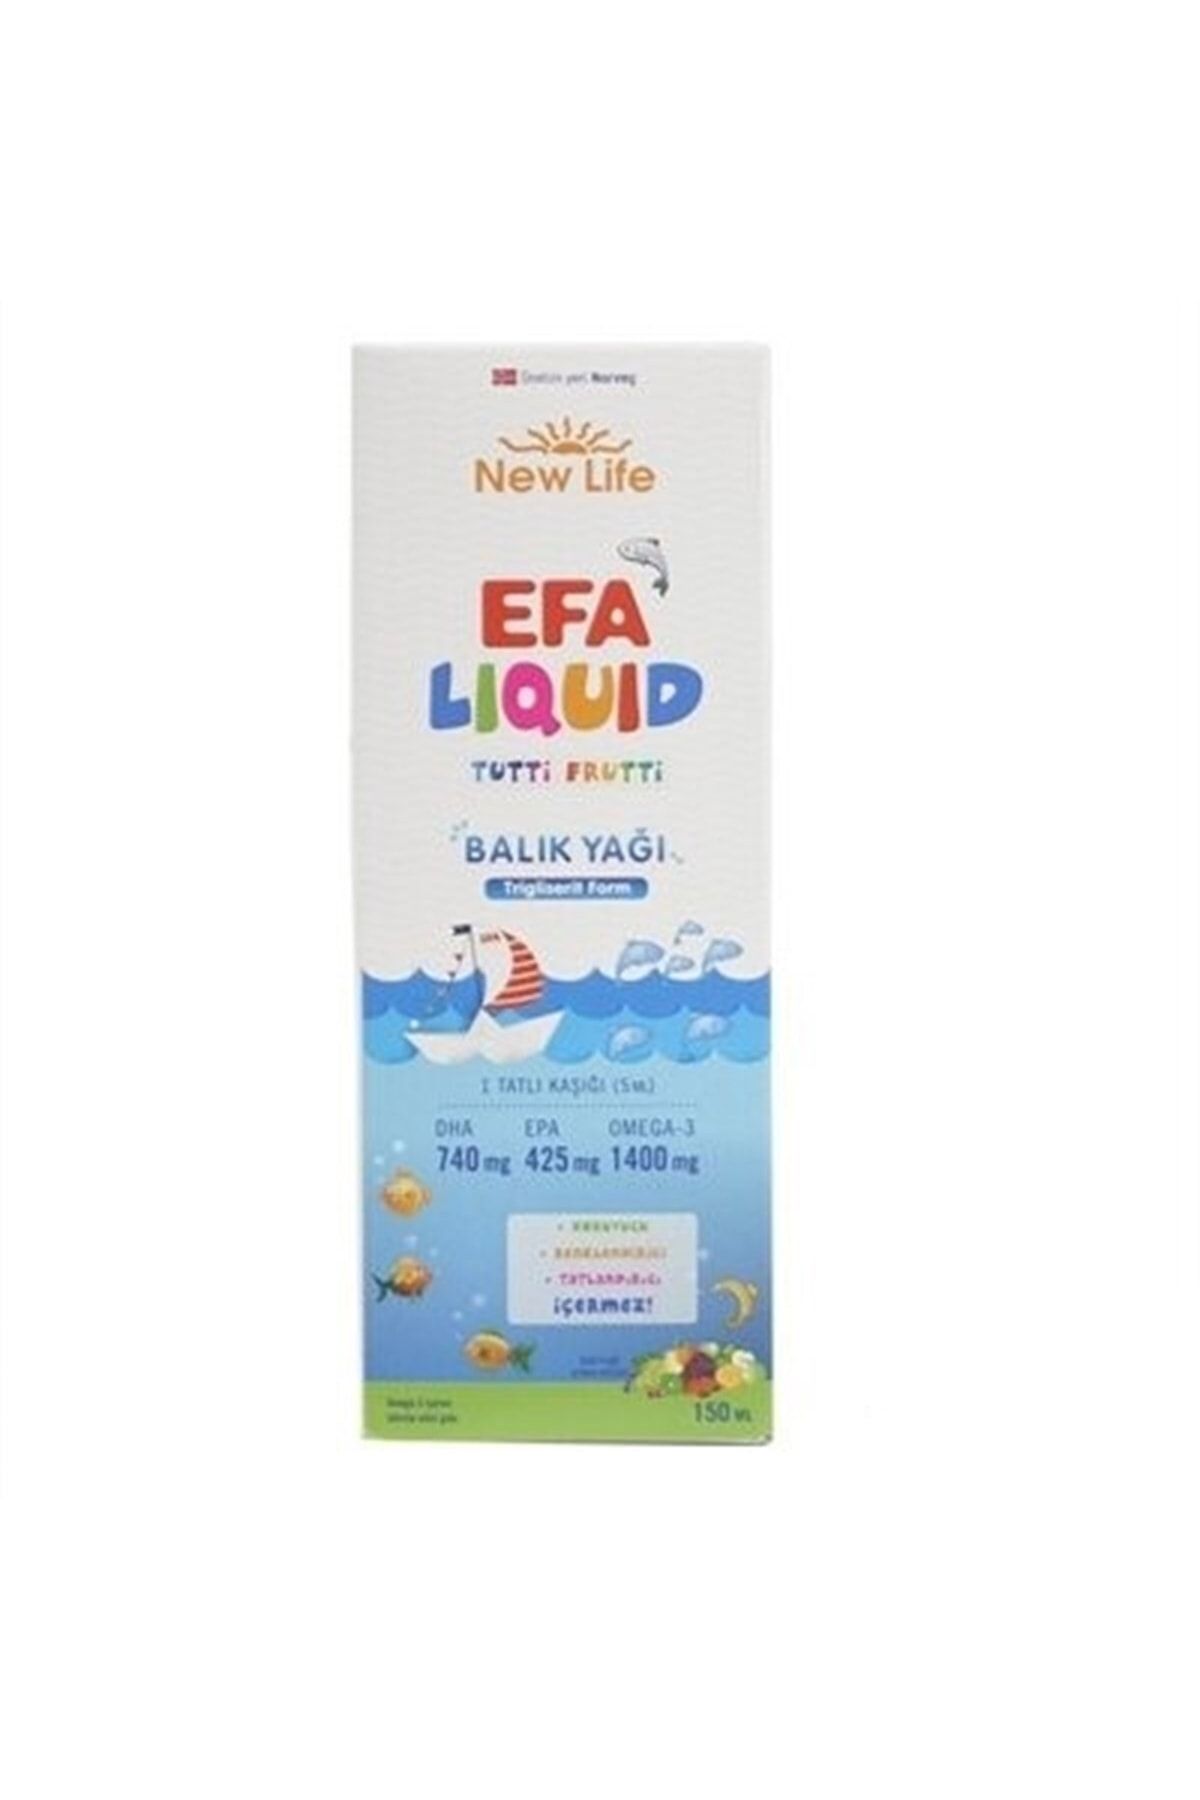 New Life Efa Liquid Tutti Frutti Balık Yağı Şurubu 150ml